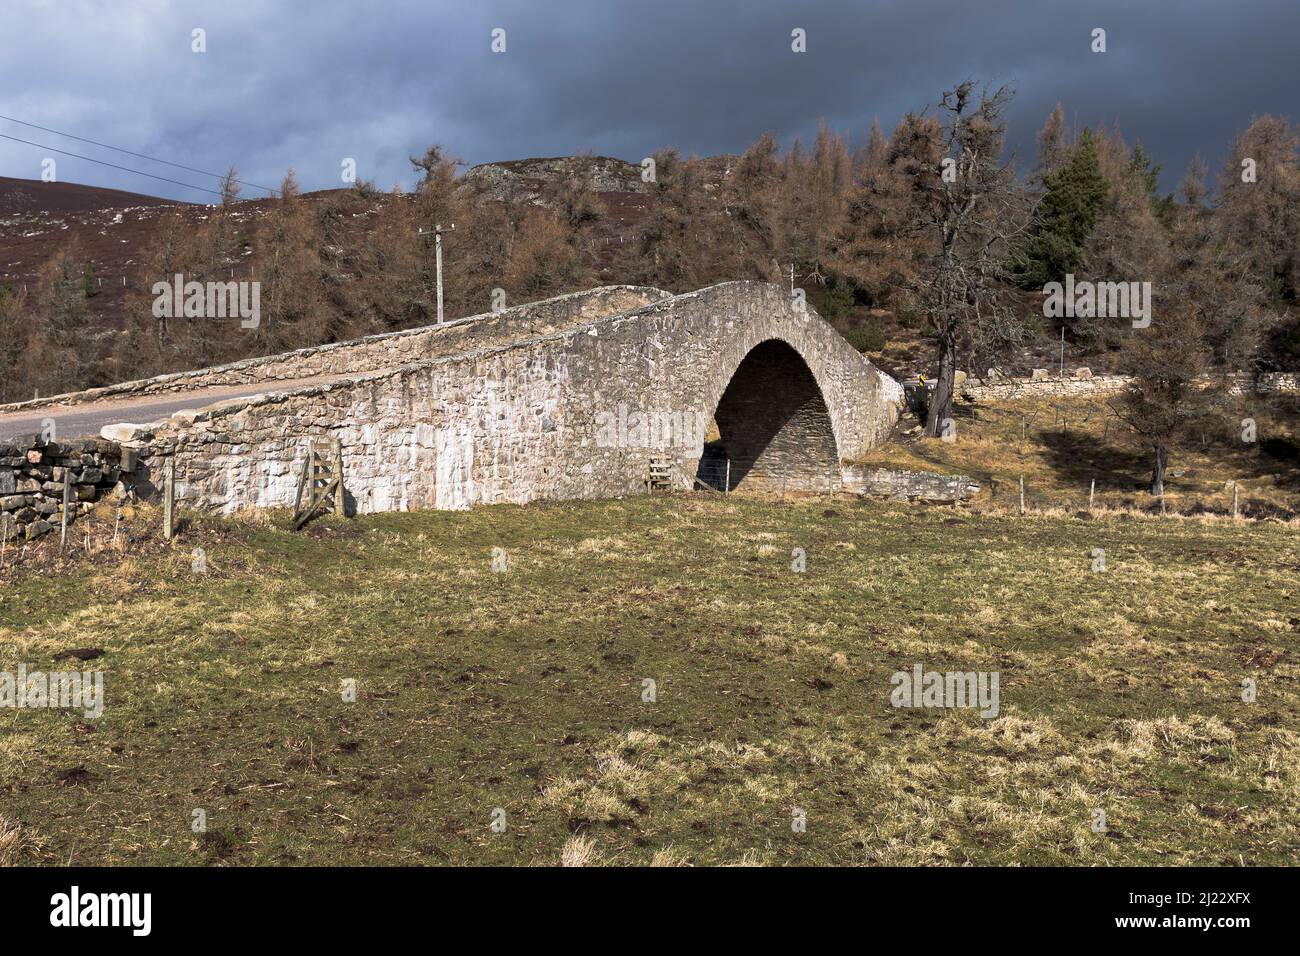 dh Gairnshiel Bridge Glen GAIRN ABERDEENSHIRE schottischer Stein Buckelbrücken Schottland Buckel Straße A939 Glengairn Stockfoto